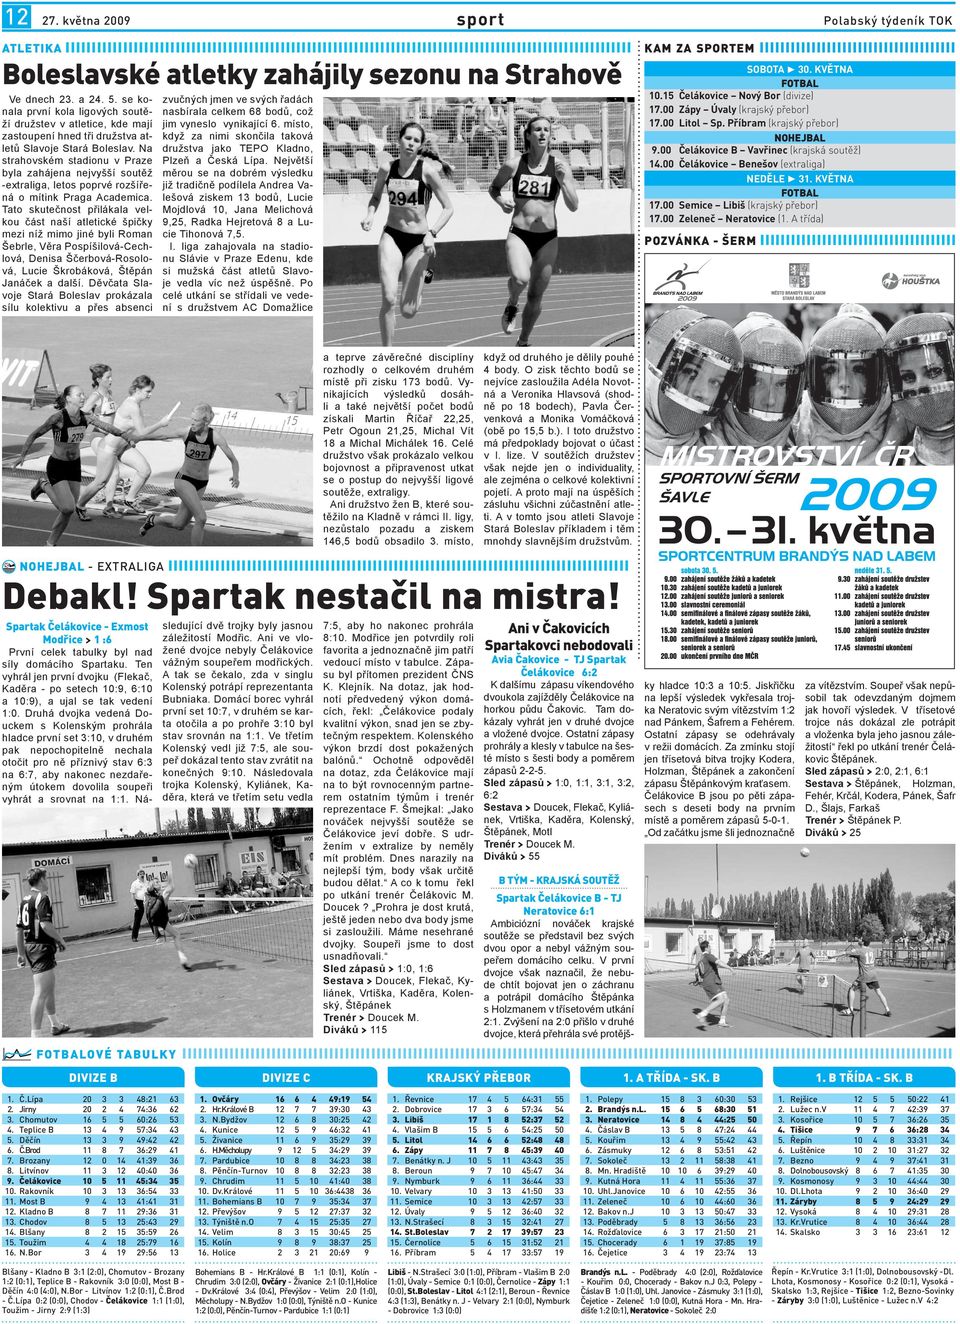 Strahově Ve dnech 23. a 24. 5. se konala první kola ligových soutěží družstev v atletice, kde mají zastoupení hned tři družstva atletů Slavoje Stará Boleslav.